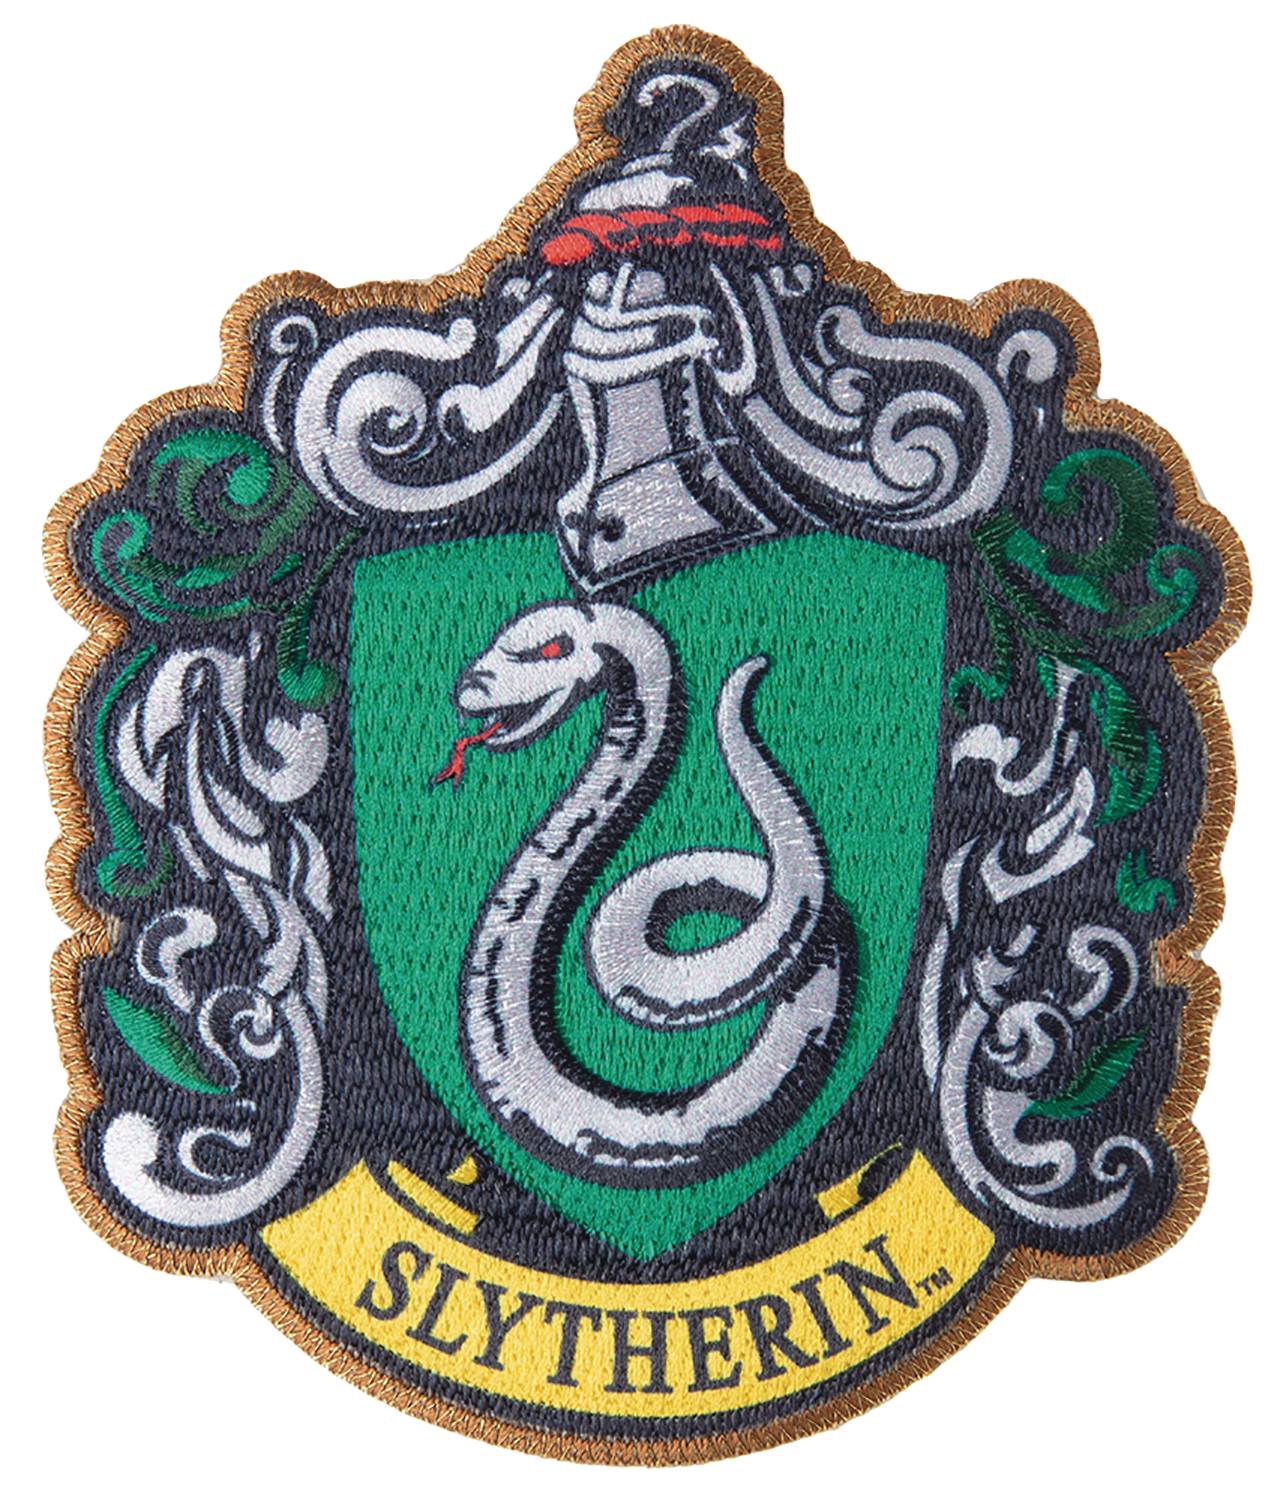 Harry Potter Slytherin Patch